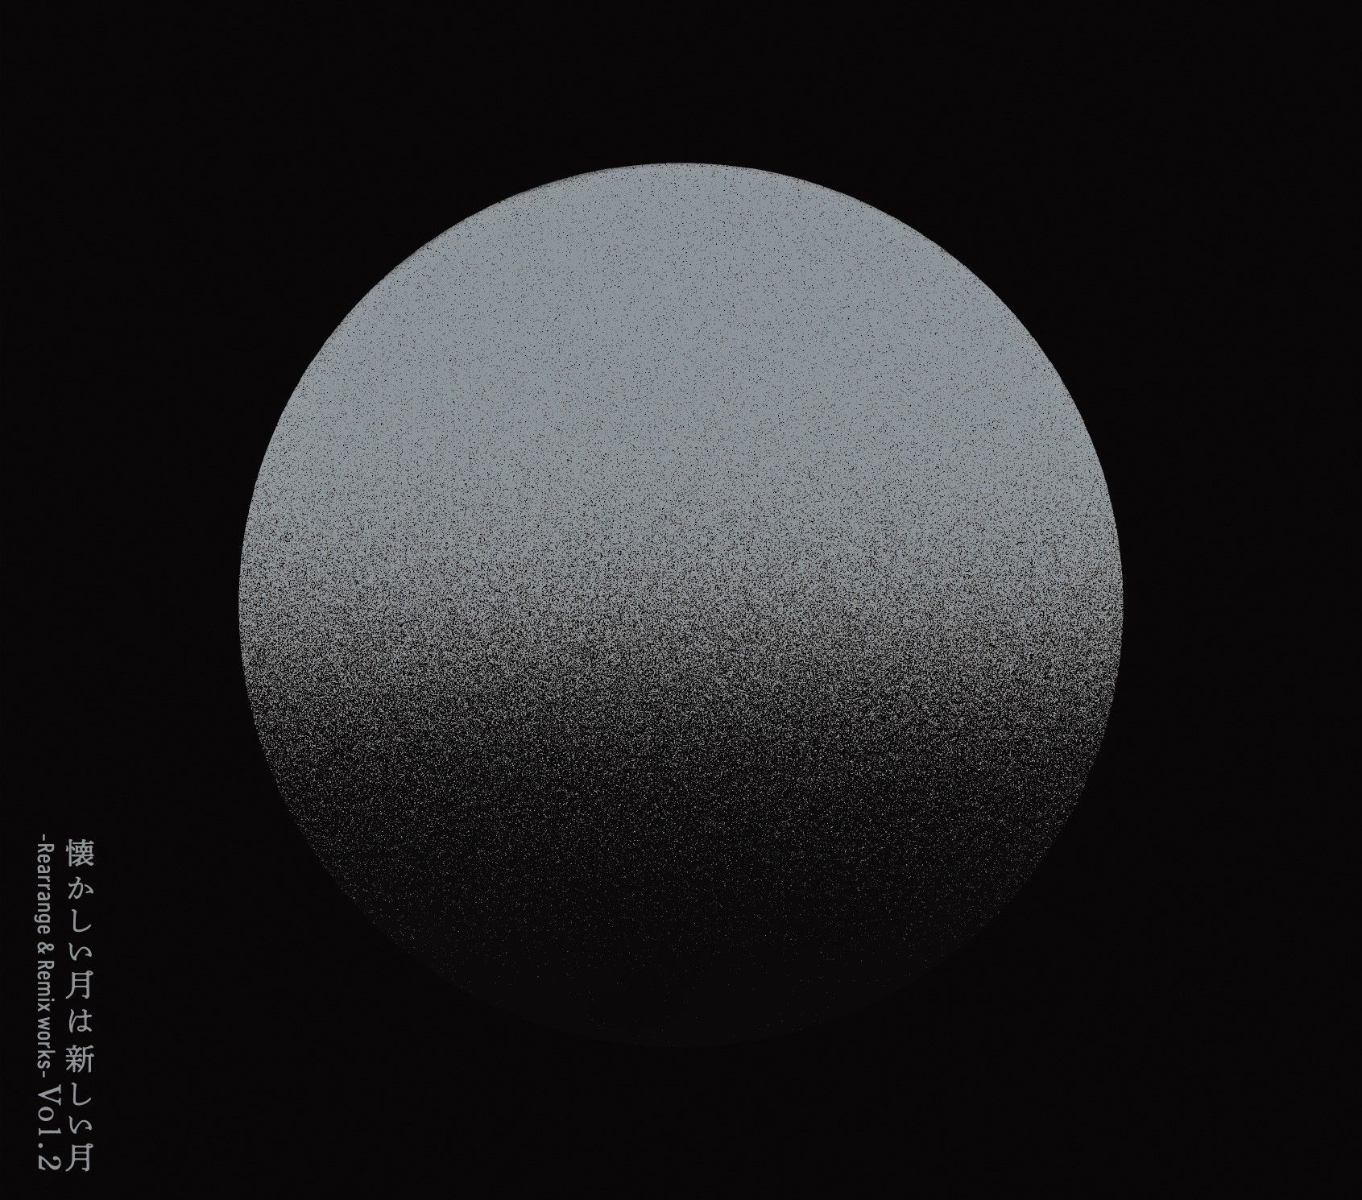 楽天ブックス: 懐かしい月は新しい月 Vol.2 ～Rearrange & Remix works